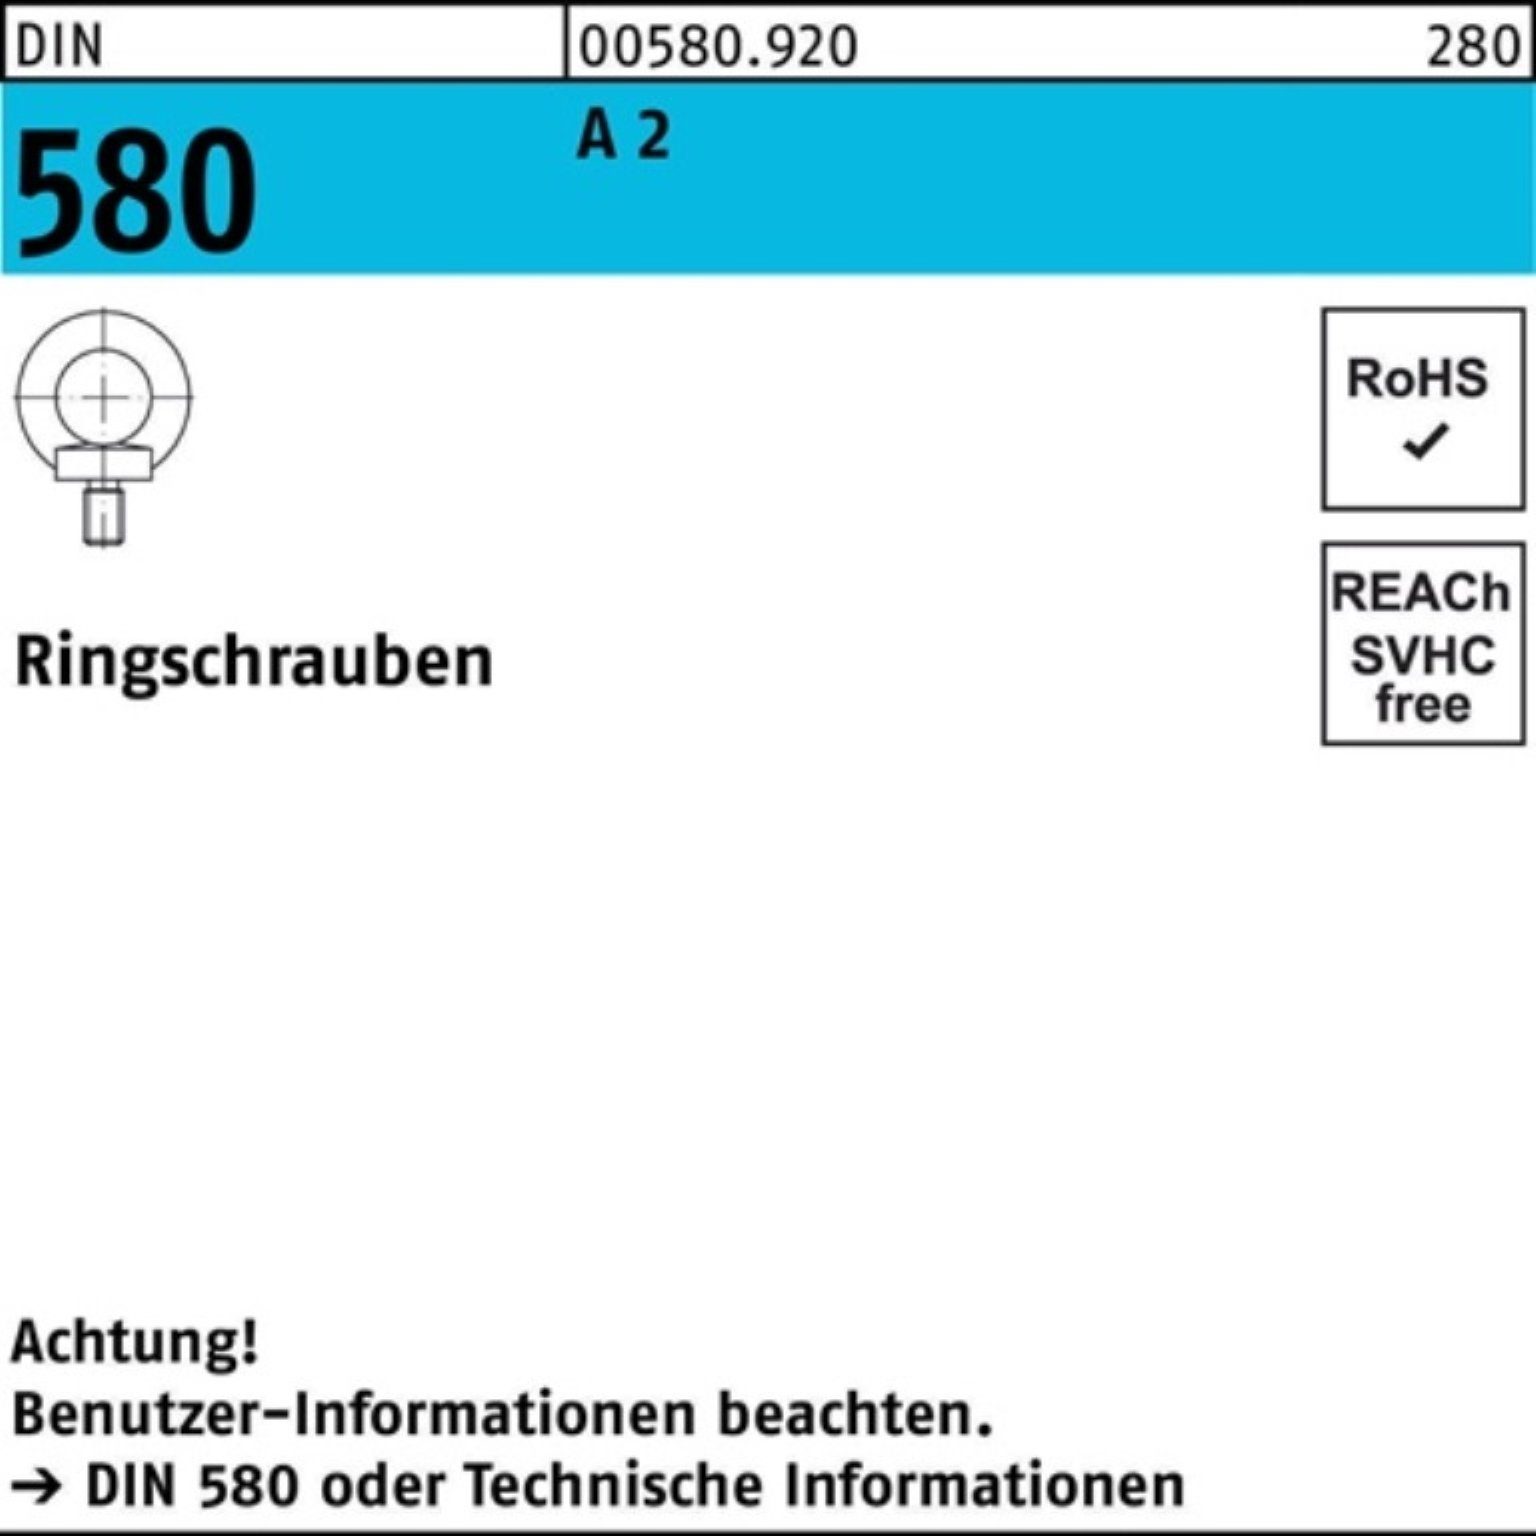 Reyher Schraube 100er Pack Ringschraube DIN 580 M20 A 2 1 Stück DIN 580 A 2 Ringschra